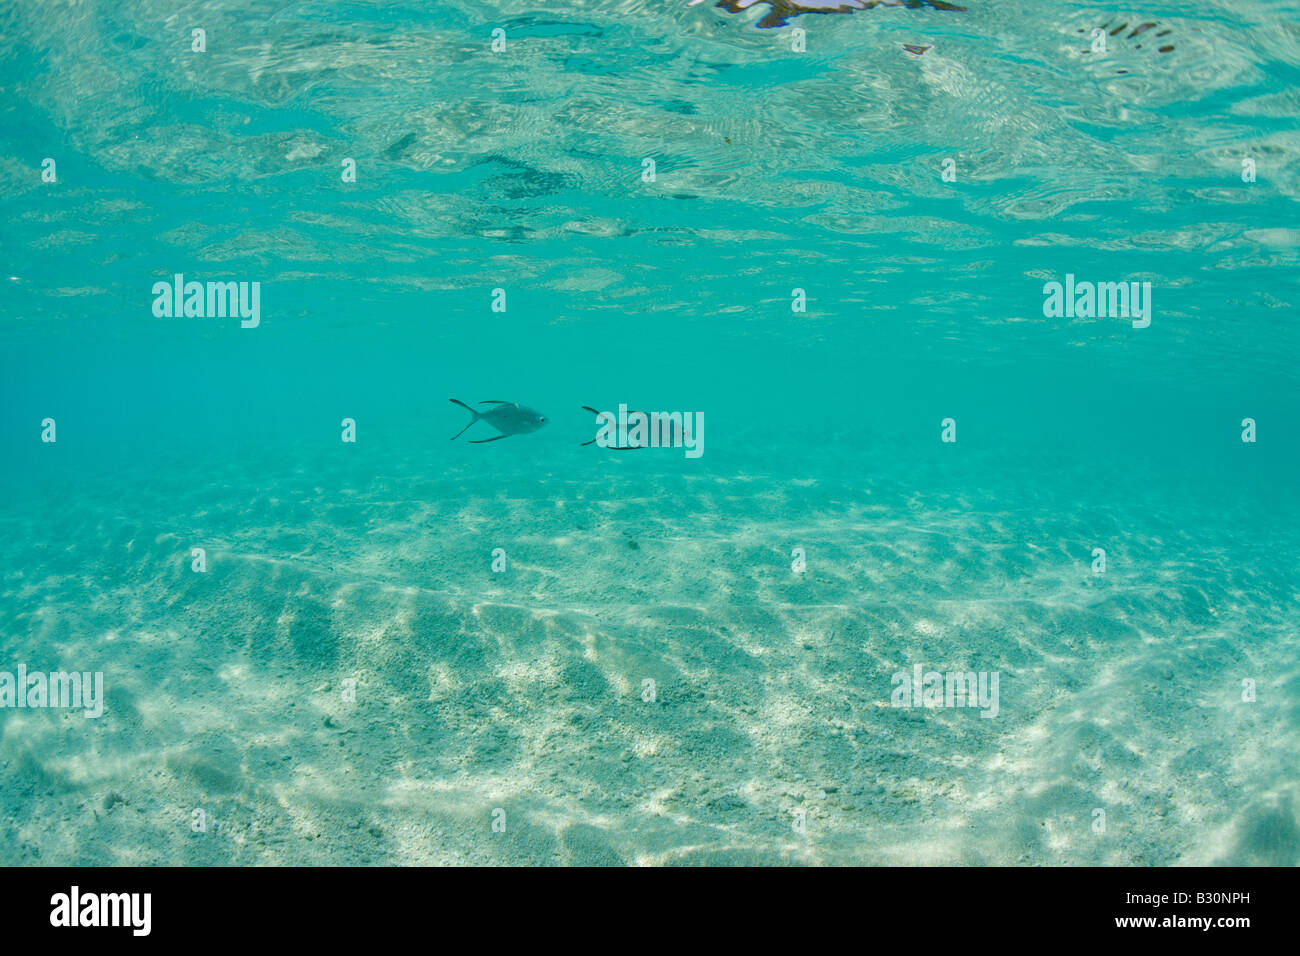 Pompanos in seichten Lagune Trachinotus Bailloni Marshallinseln Bikini Atoll Mikronesien Pazifik gesichtet Stockfoto